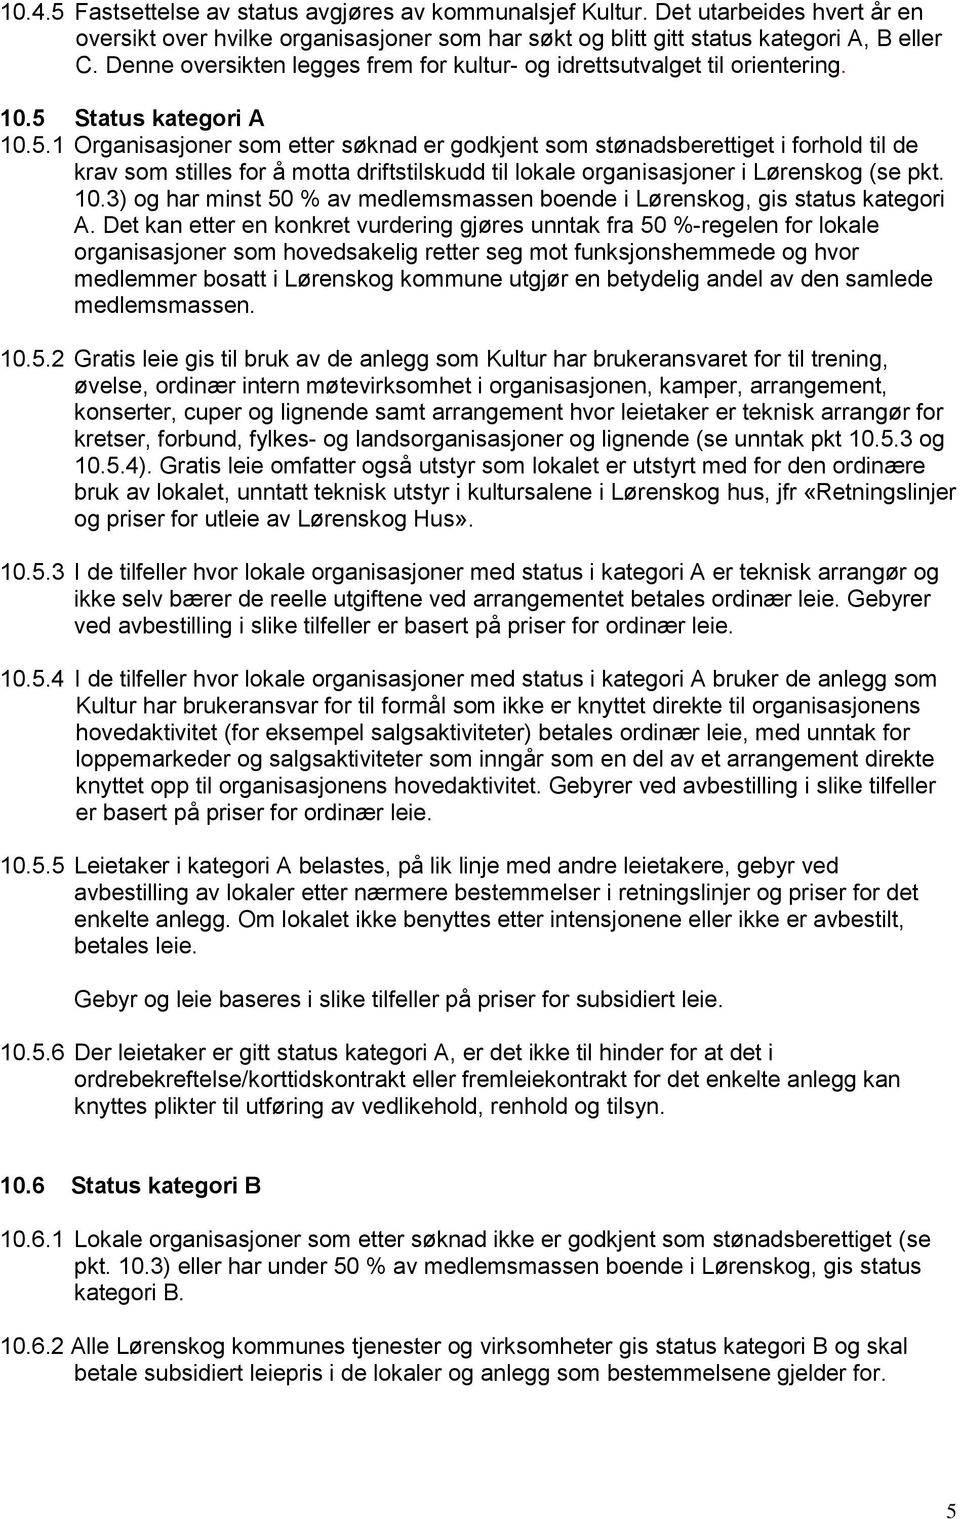 Status kategori A 10.5.1 Organisasjoner som etter søknad er godkjent som stønadsberettiget i forhold til de krav som stilles for å motta driftstilskudd til lokale organisasjoner i Lørenskog (se pkt.